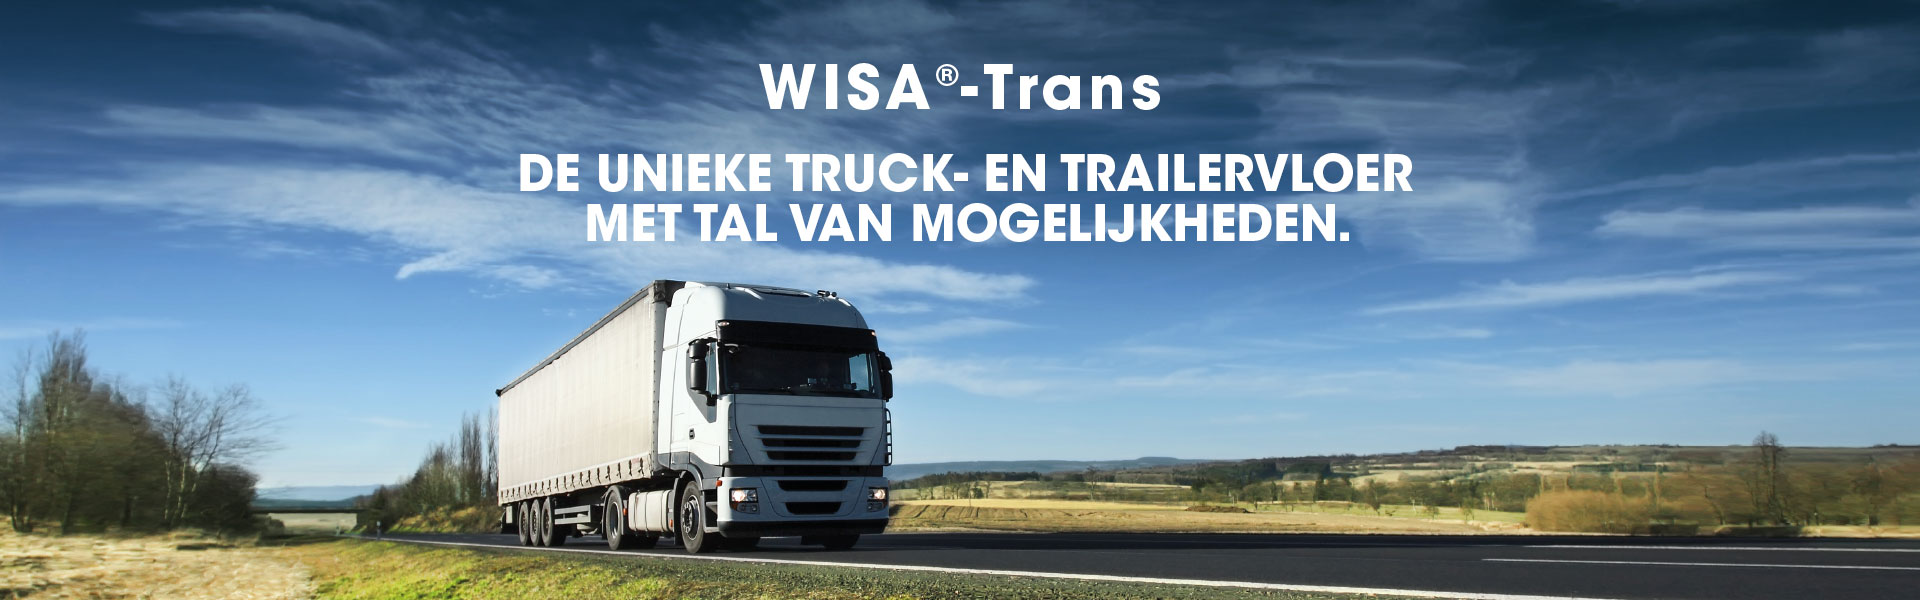 wisa-trans